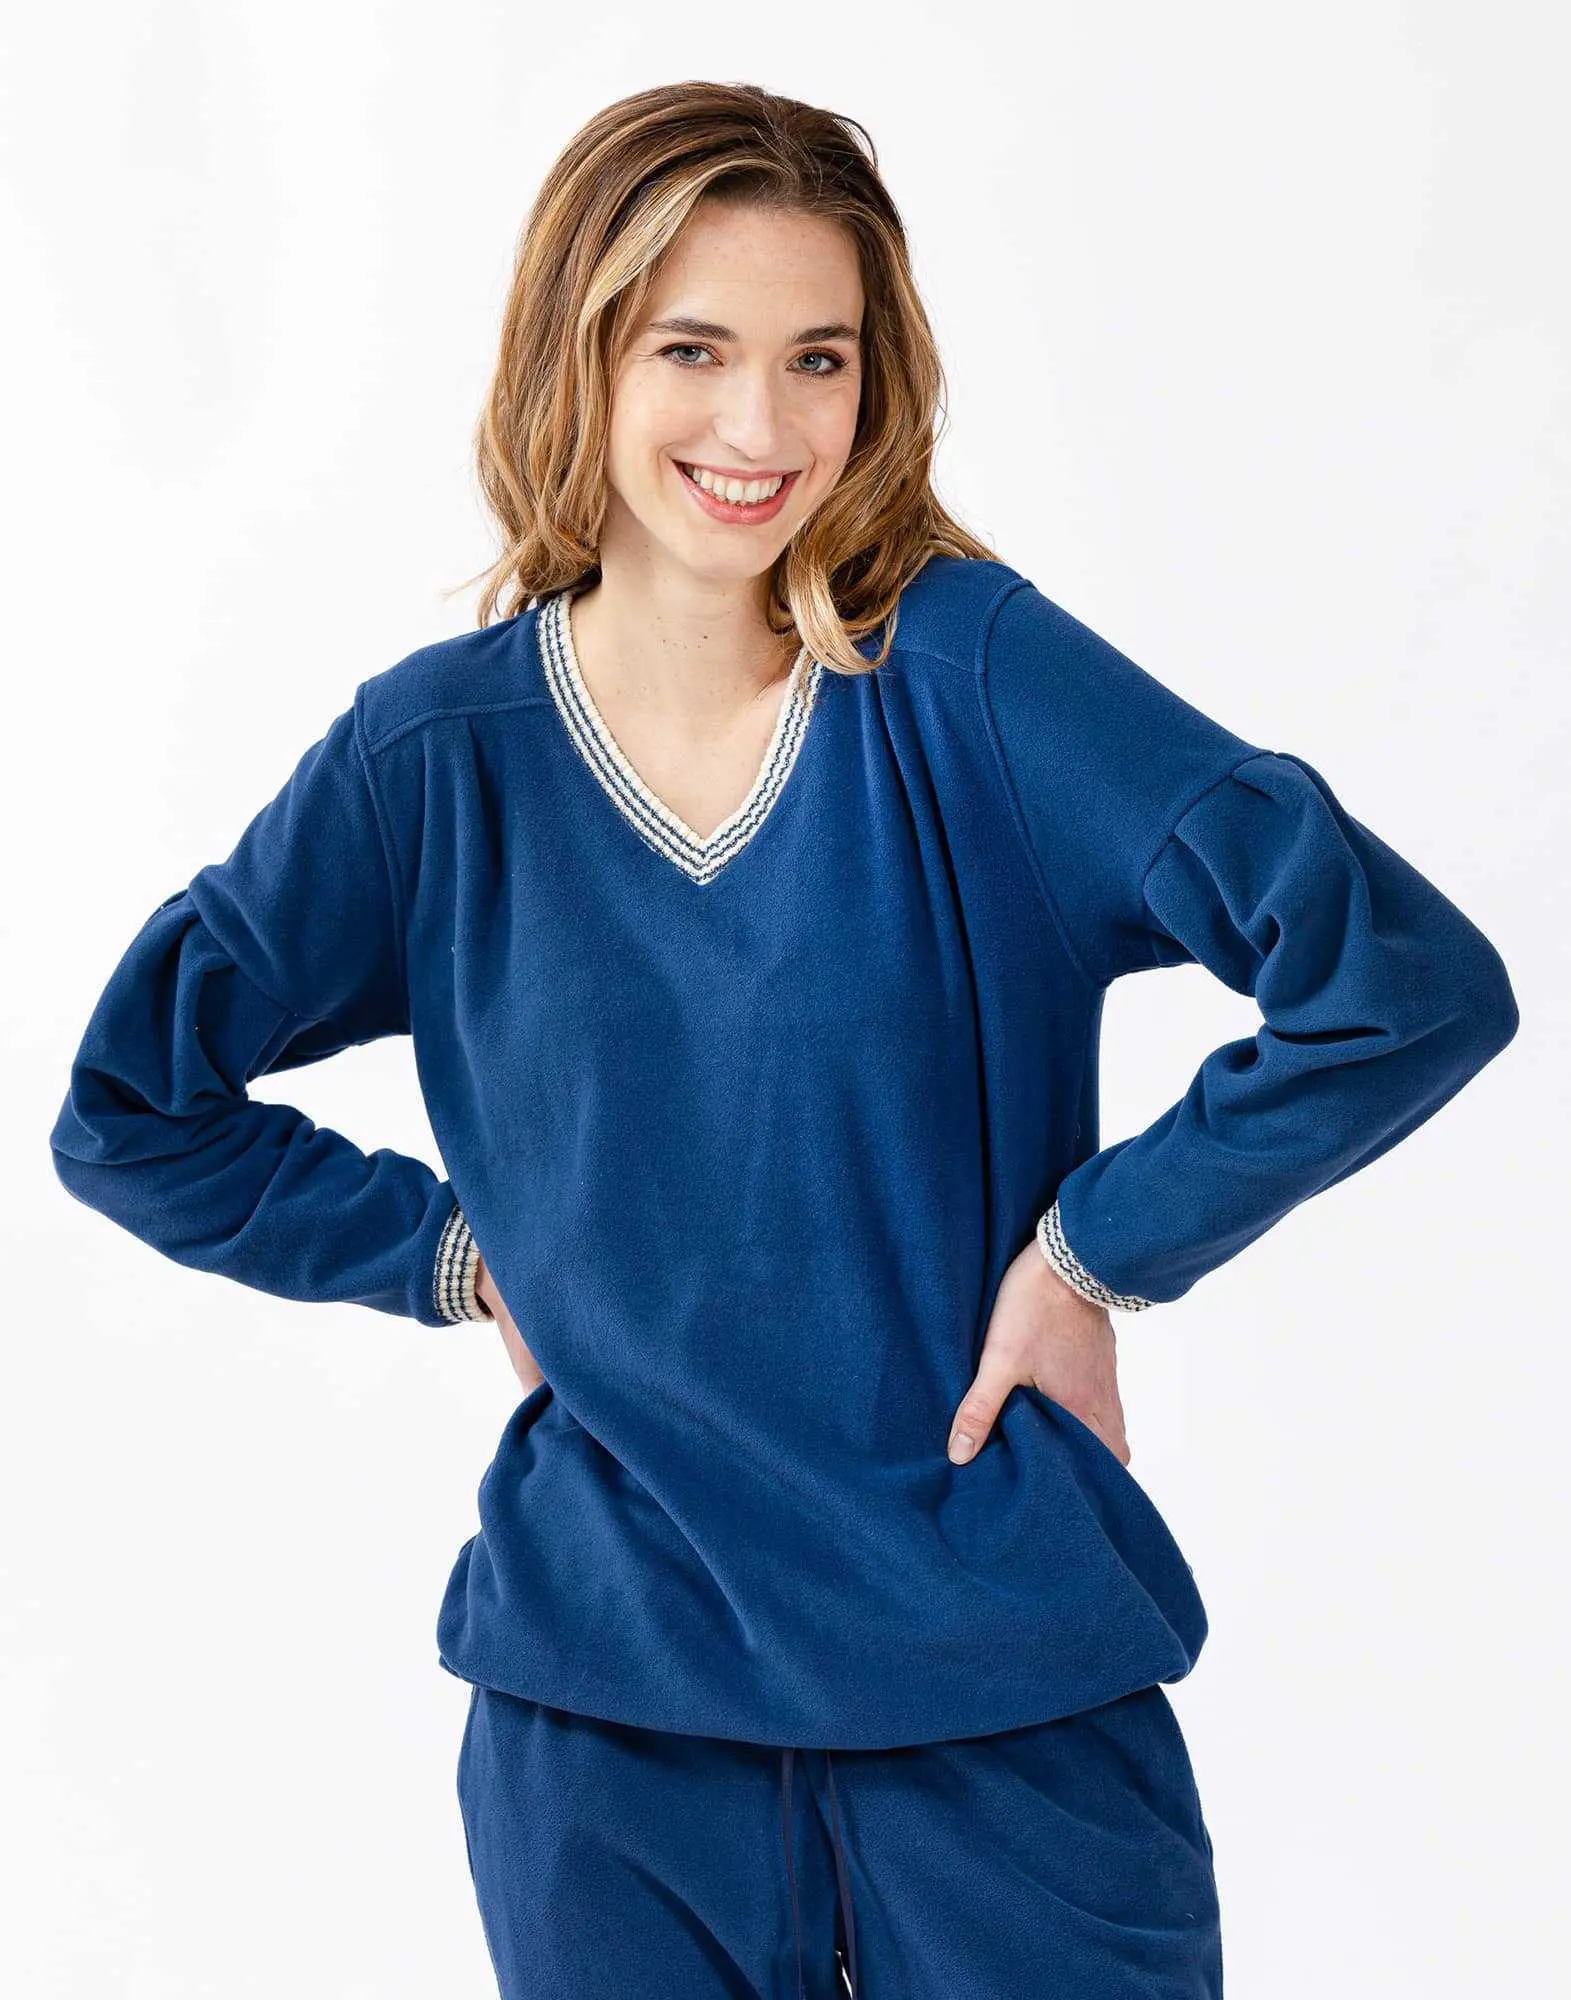 Microfleece pyjamas COMFY 602 blue | Lingerie le Chat